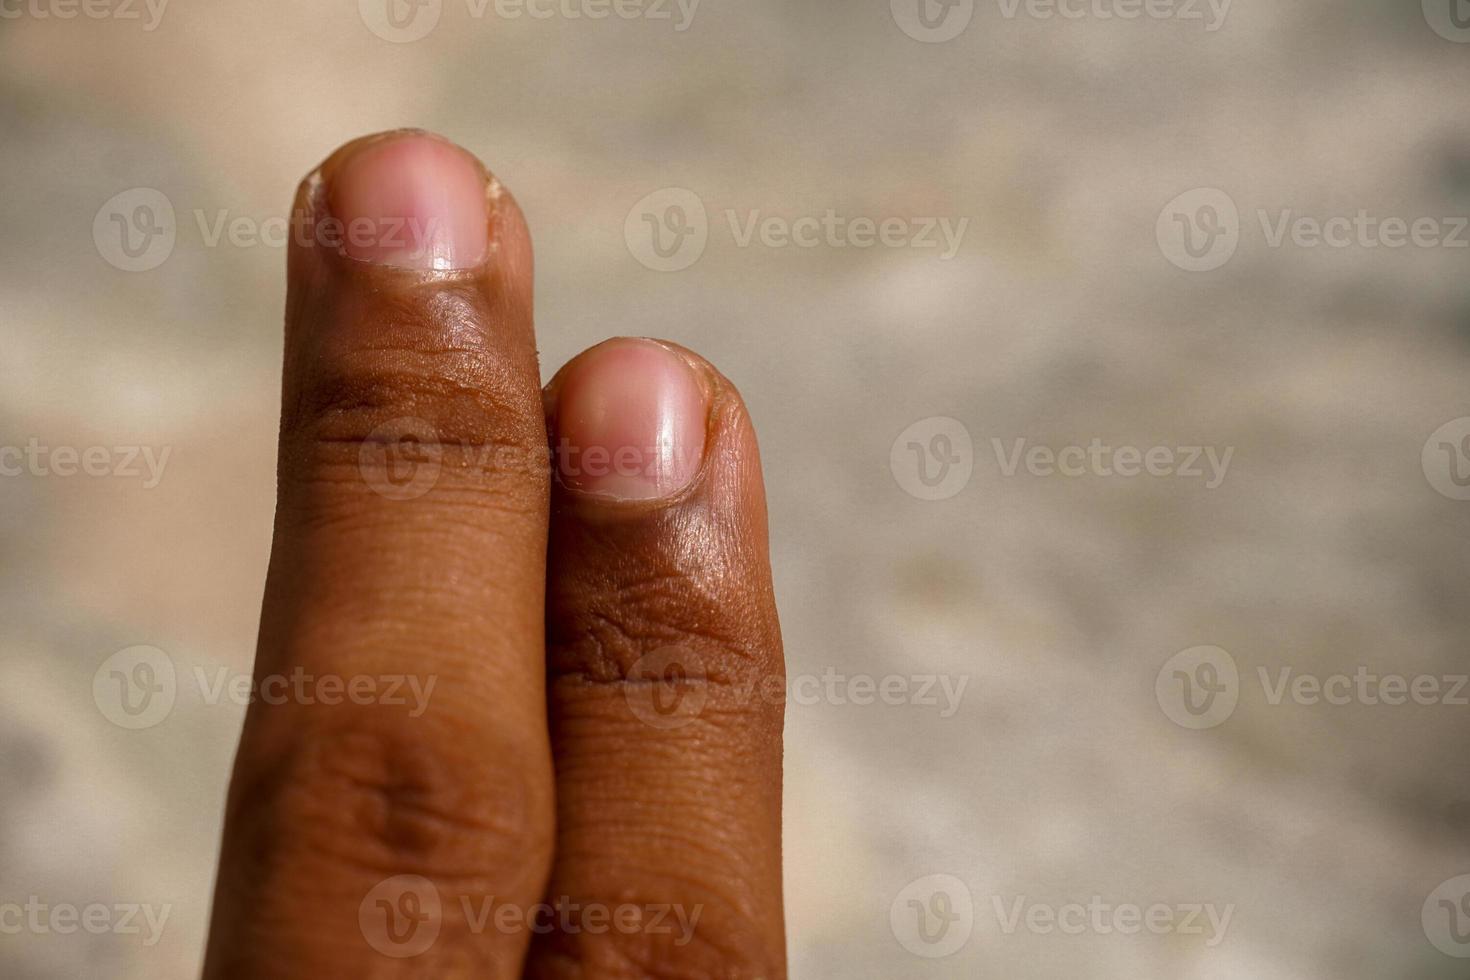 imagen de dedos dos dedos foto